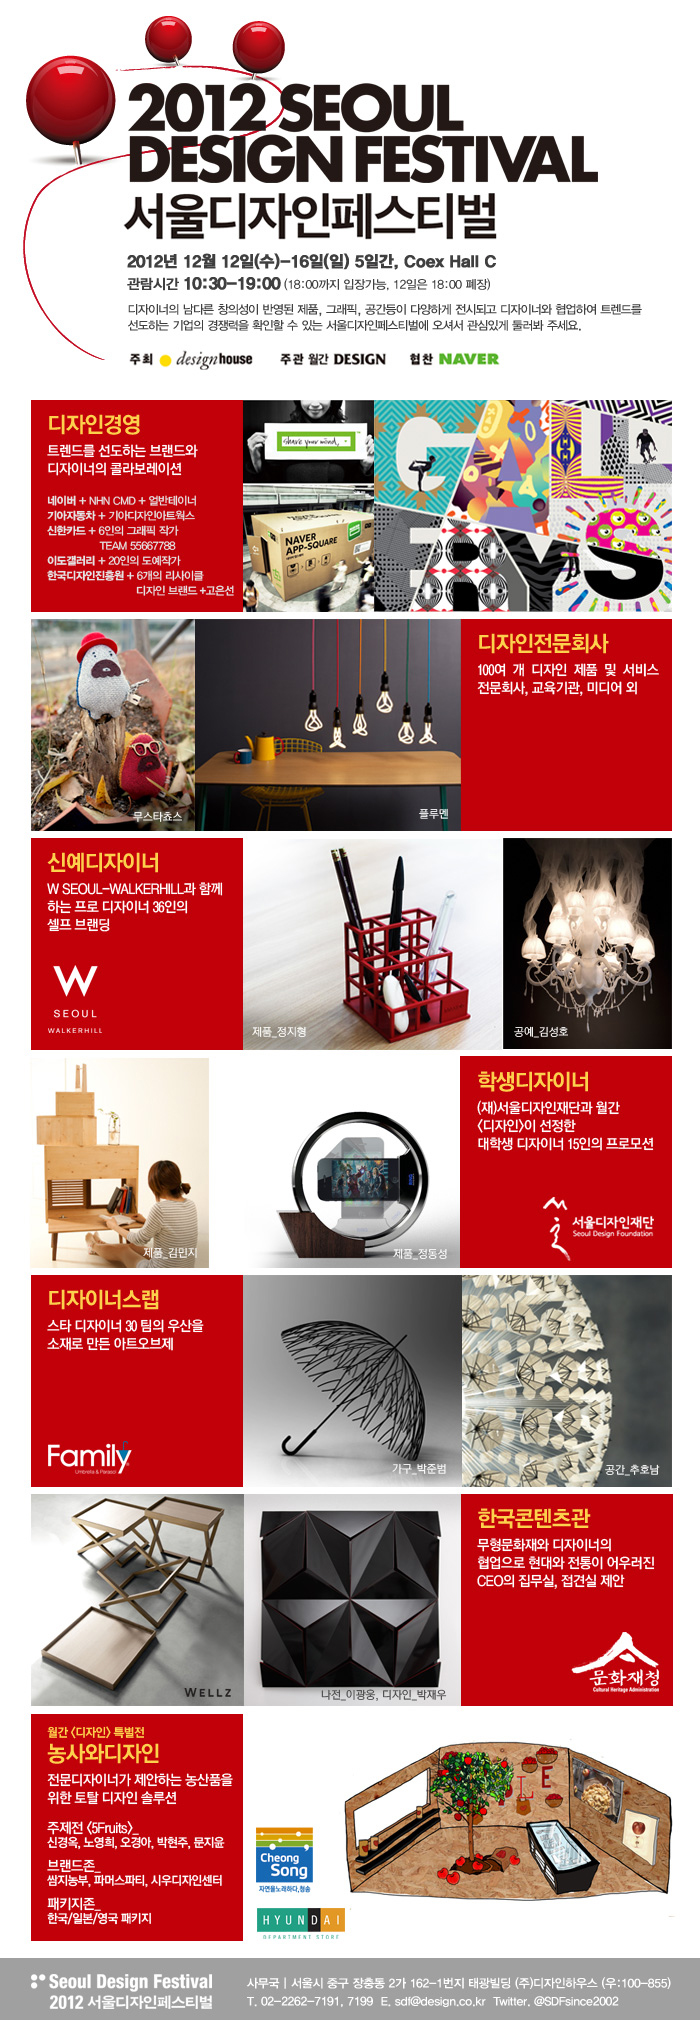 디자이너가 주인공인 축제, 서울디자인페스티벌 개막